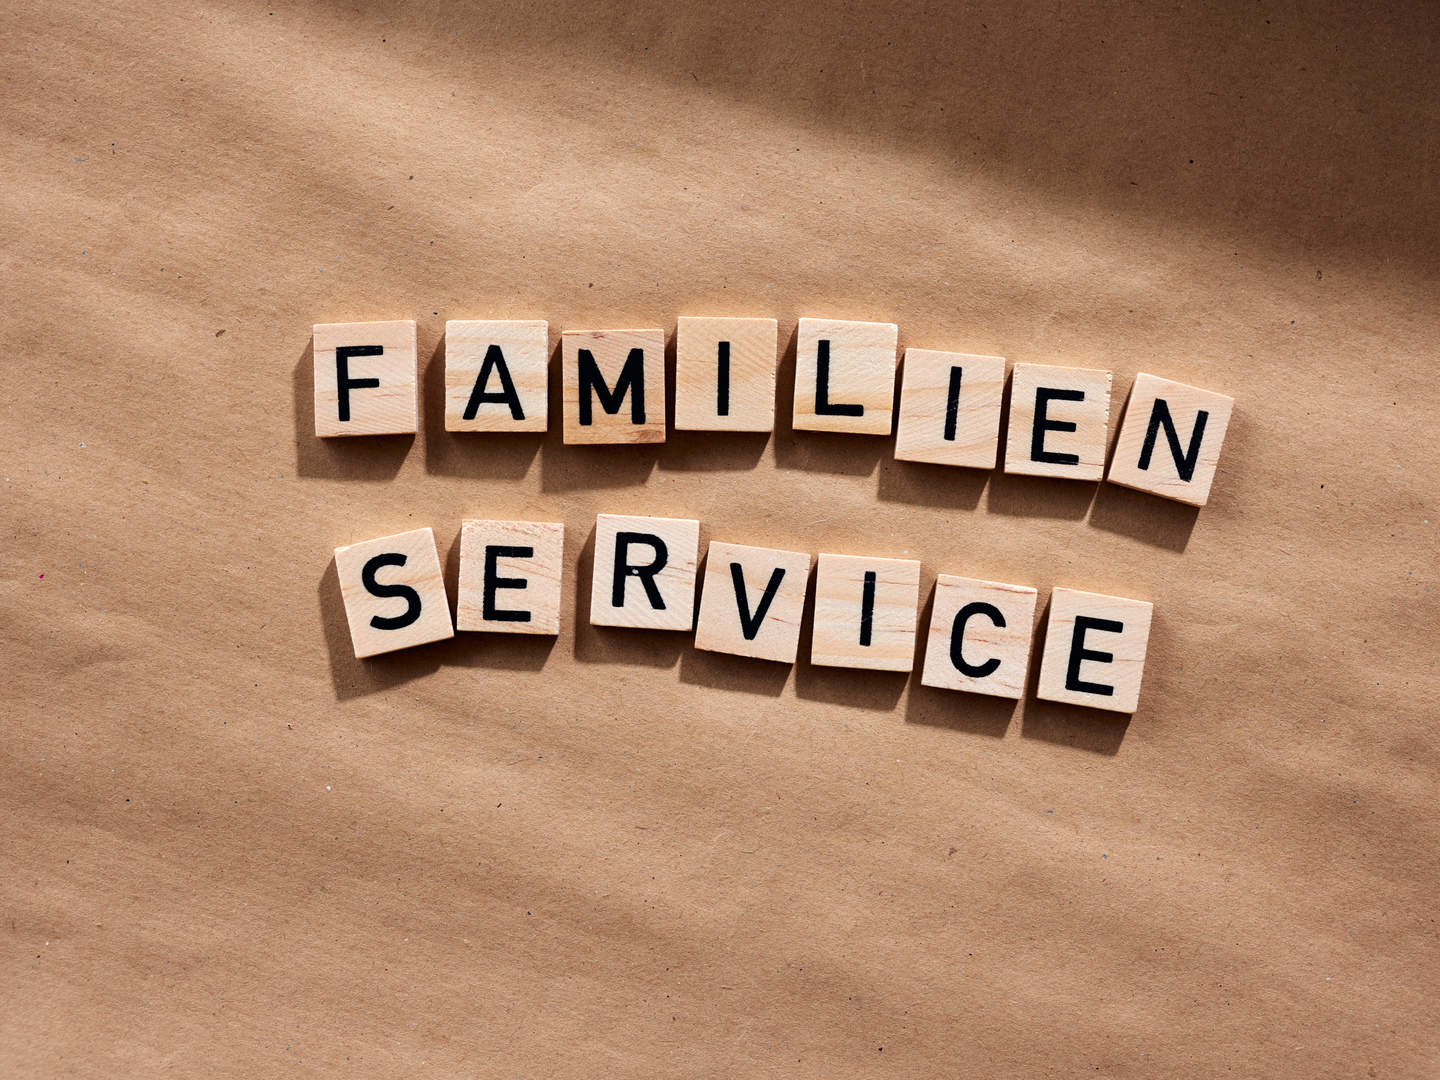 Holztäfelchen mit Buchstaben liegen auf einem Tisch und zeigen den Schriftzug "Familien Service"